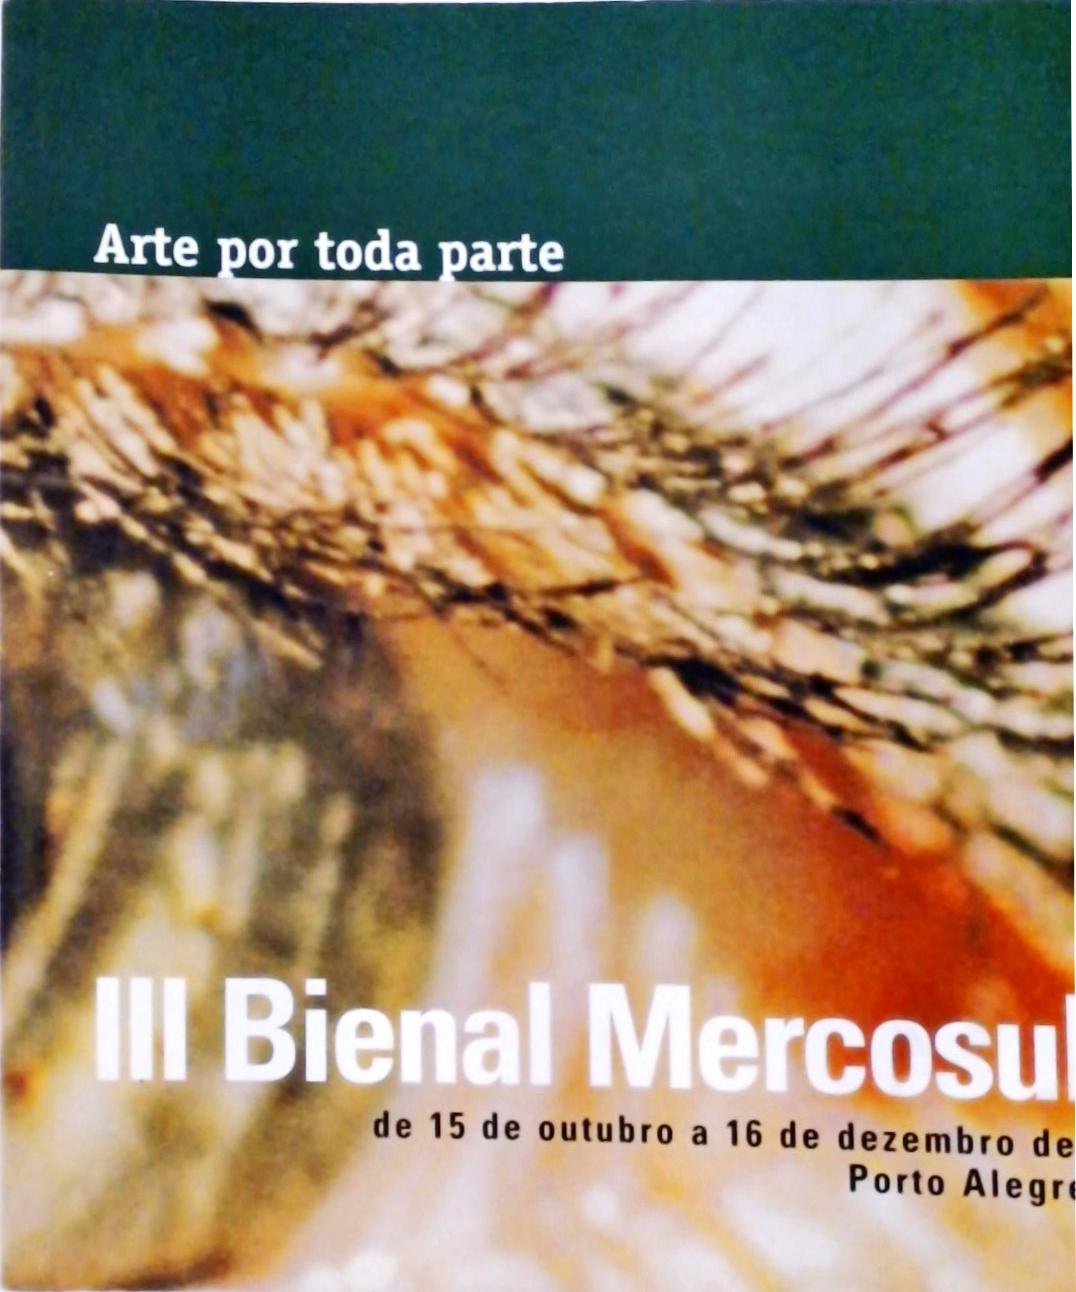 III Bienal Mercosul Porto Alegre - Arte por toda parte